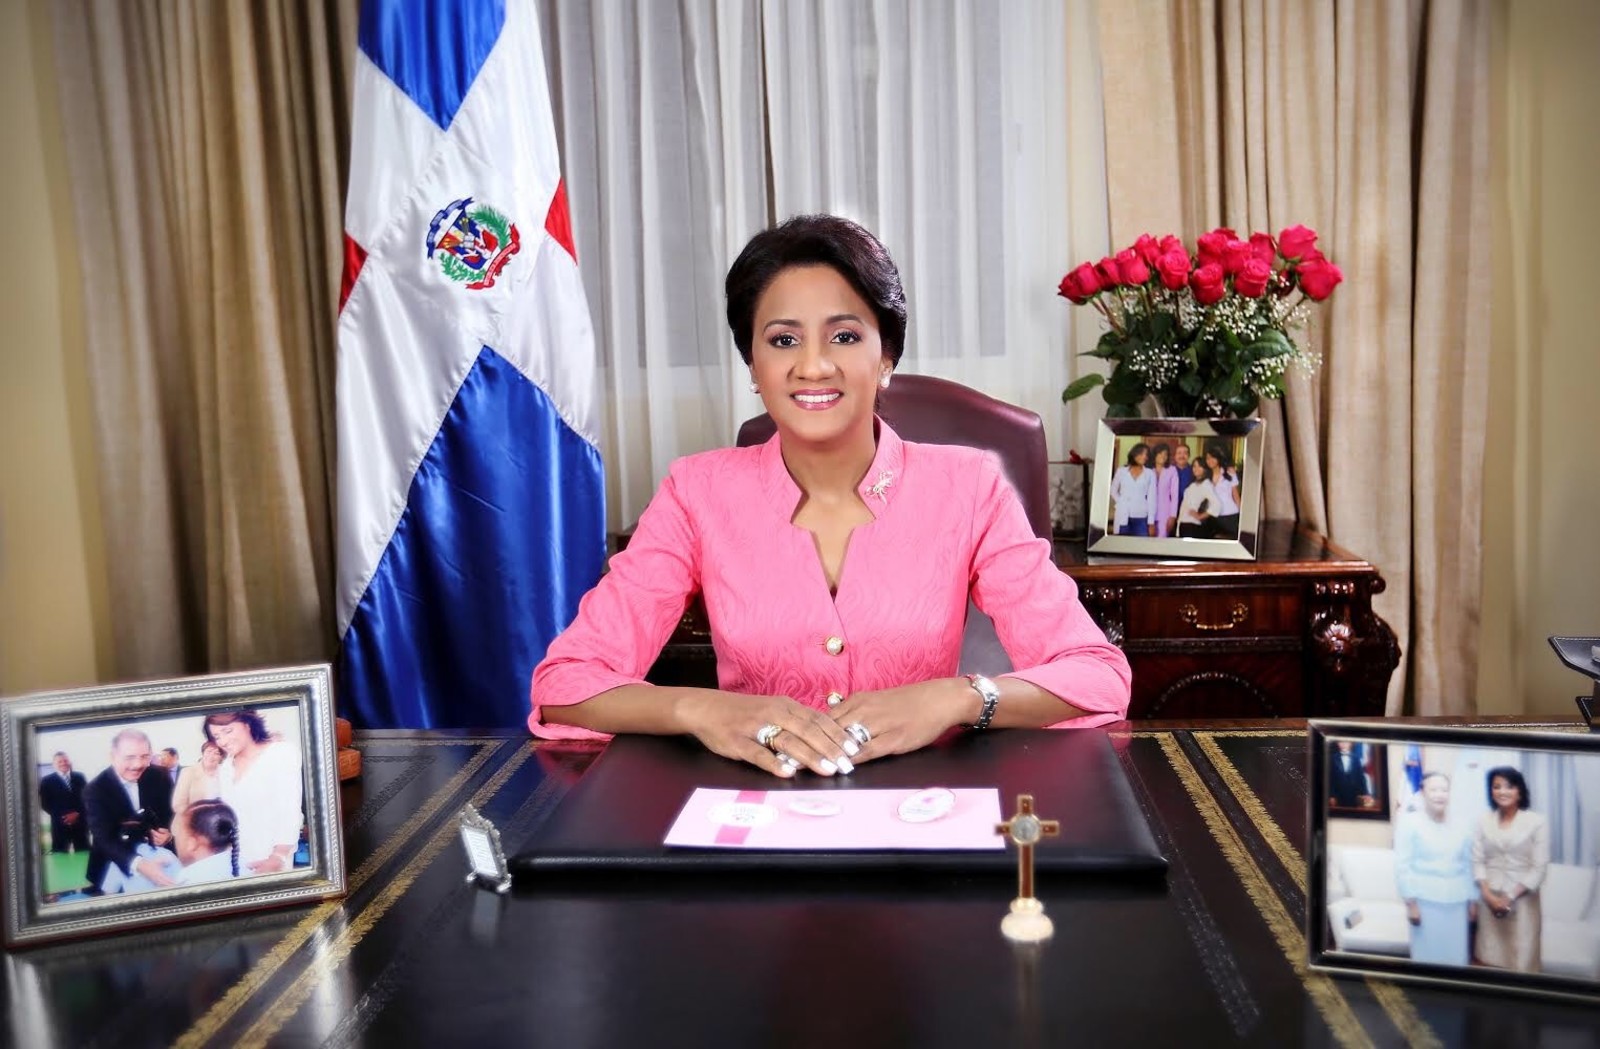 REPÚBLICA DOMINICANA: Primera dama, Cándida Montilla de Medina, espera que en el 2020 continúe progreso y desarrollo